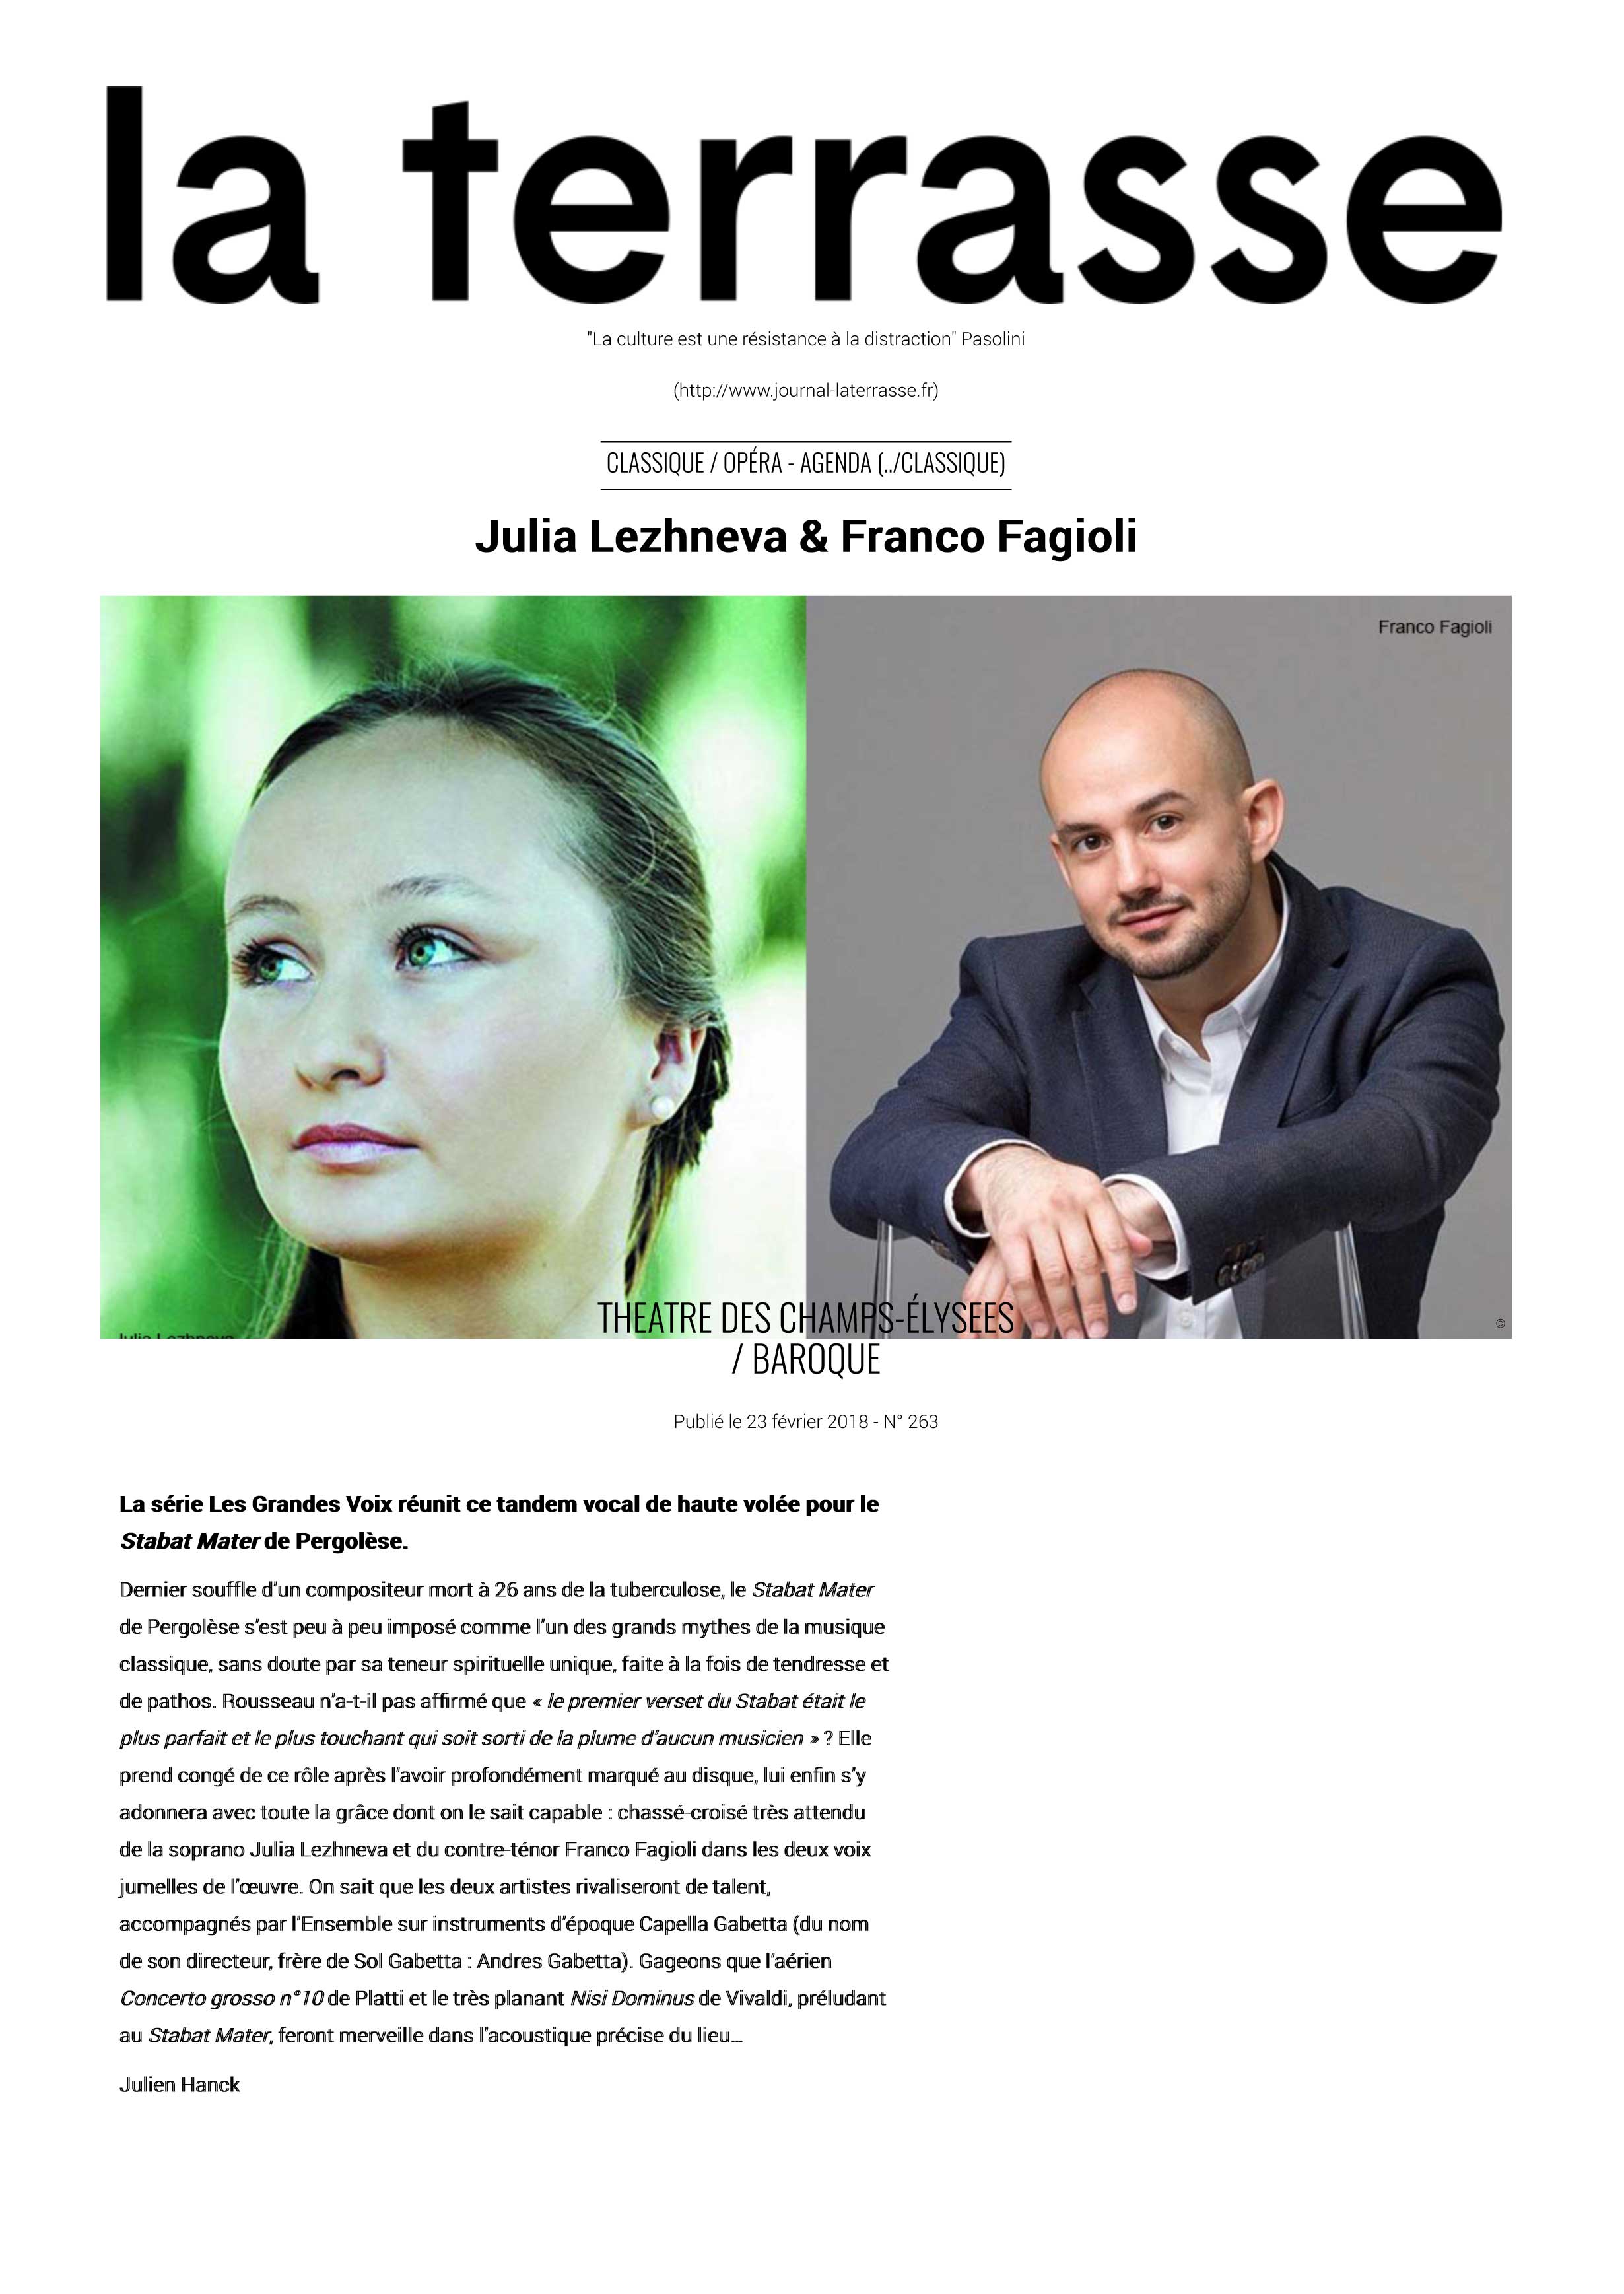 Annonce du récital de Julia Lezhneva et Franco Fagioli au Théâtre des Champs-Elysées le 27 mars 2018 dans le numéro de La Terrasse de mars 2018.